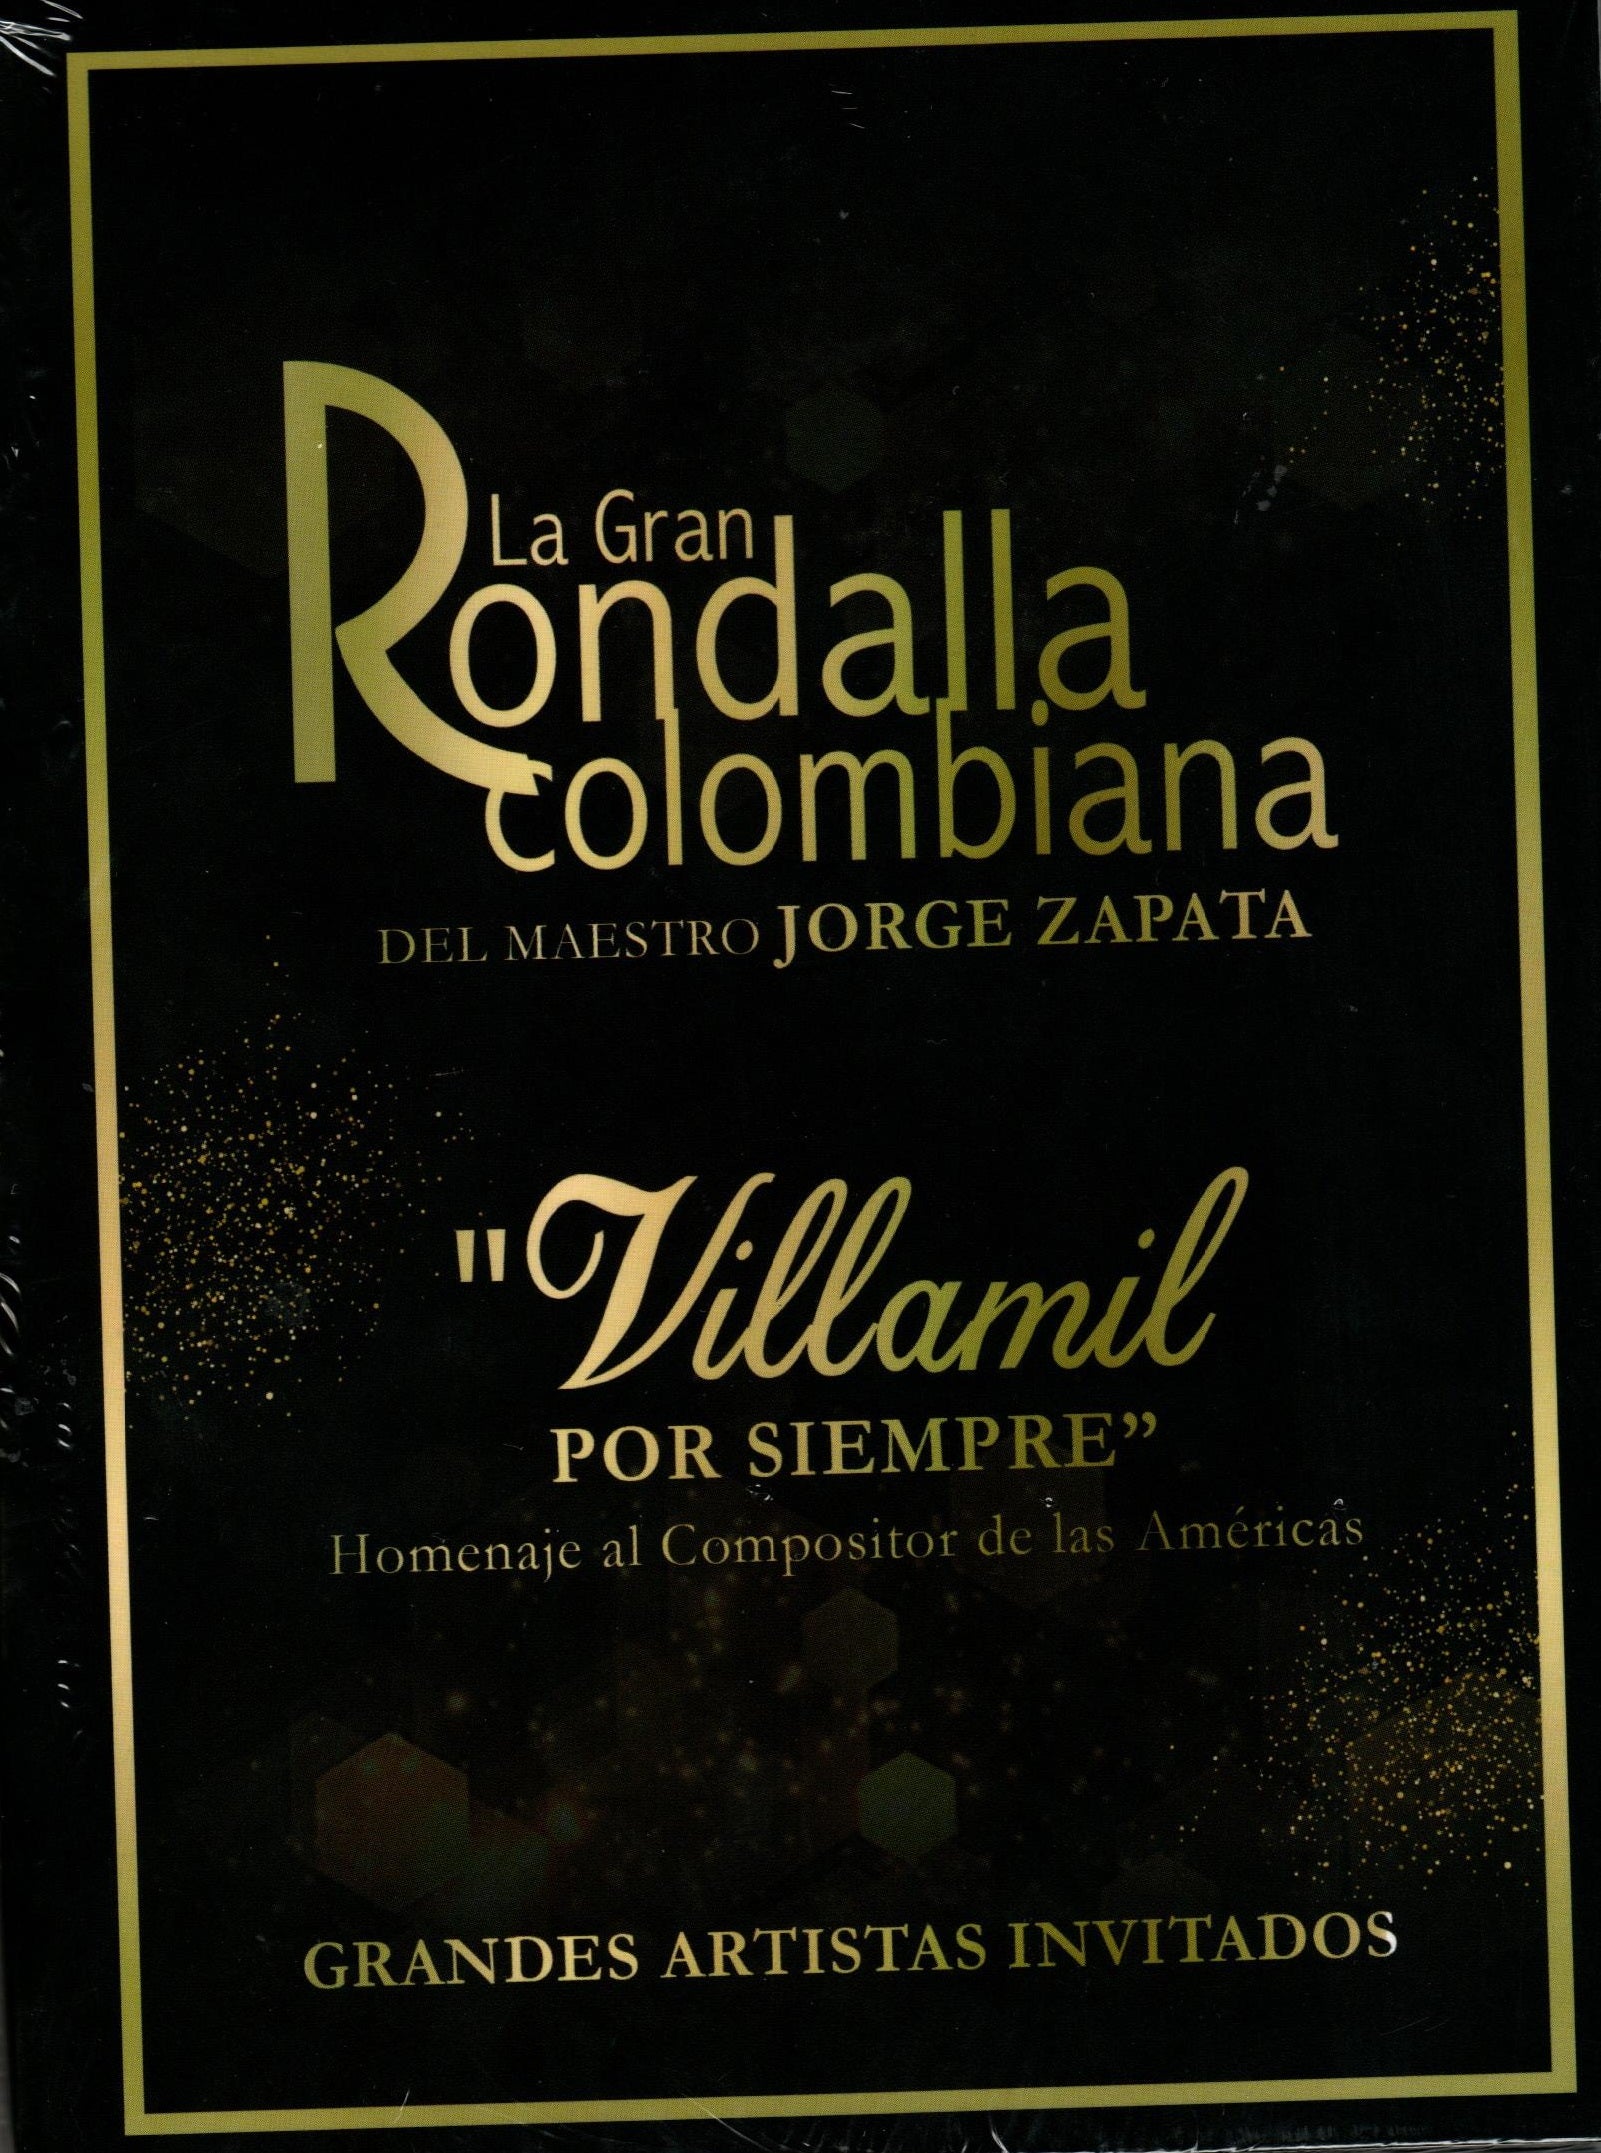 CD Jorge Zapata Villamil - La Gran Rondalla Colombiana Del Maestro Jorge Zapata Villamil Por Siempre